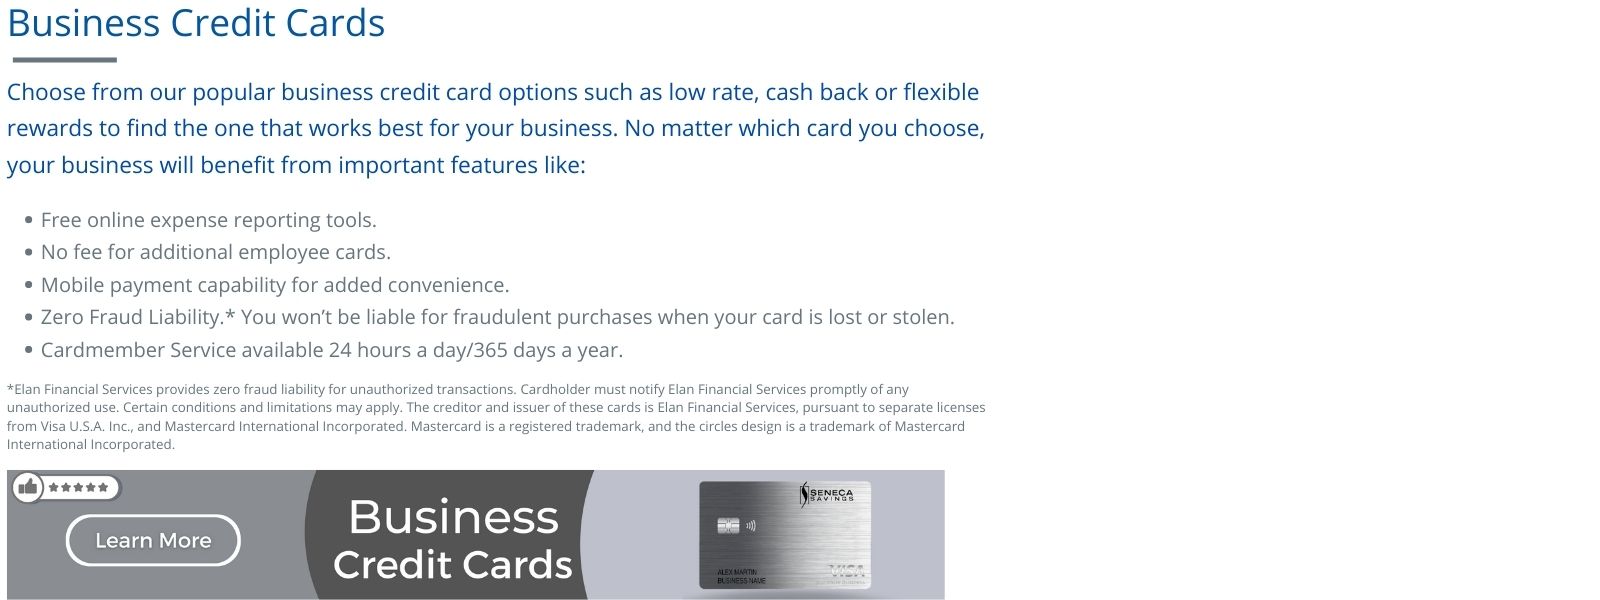 business credit card at seneca savings